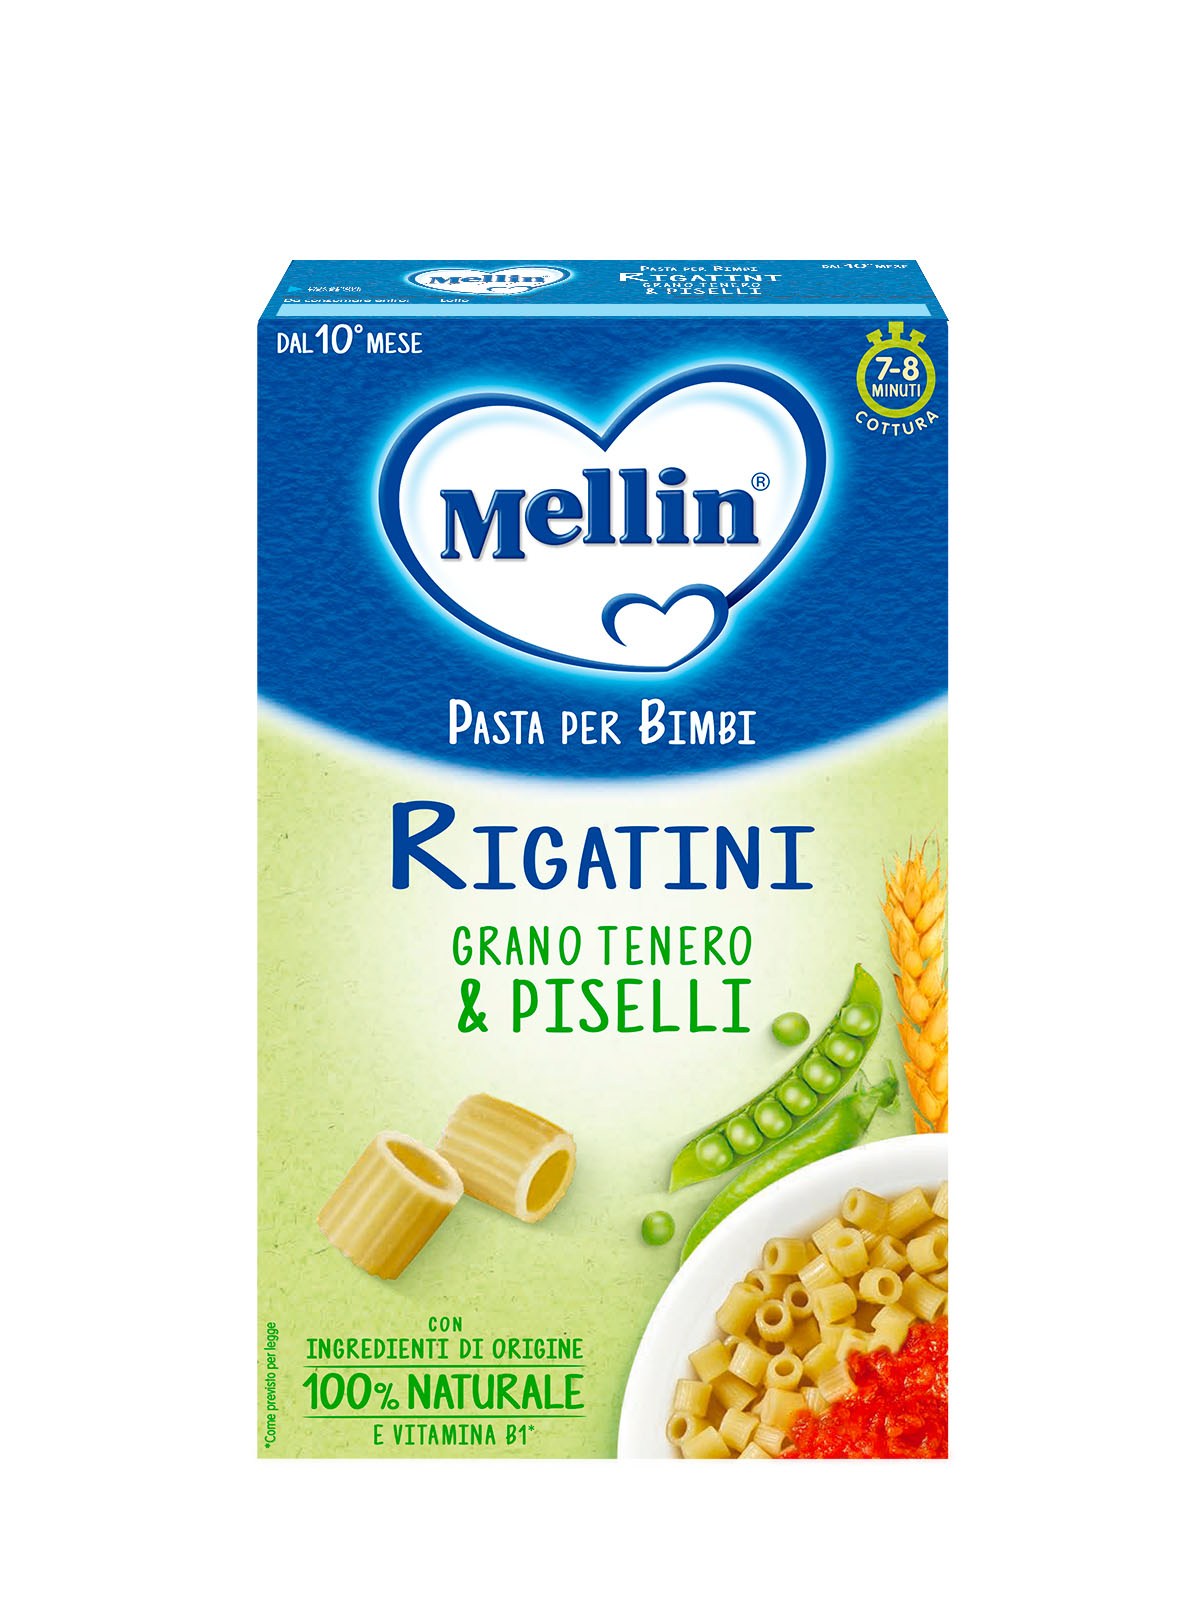 Mellin - la pasta dei bimbi 100% naturale rigatini con farina grano tenero e piselli 280g - Mellin